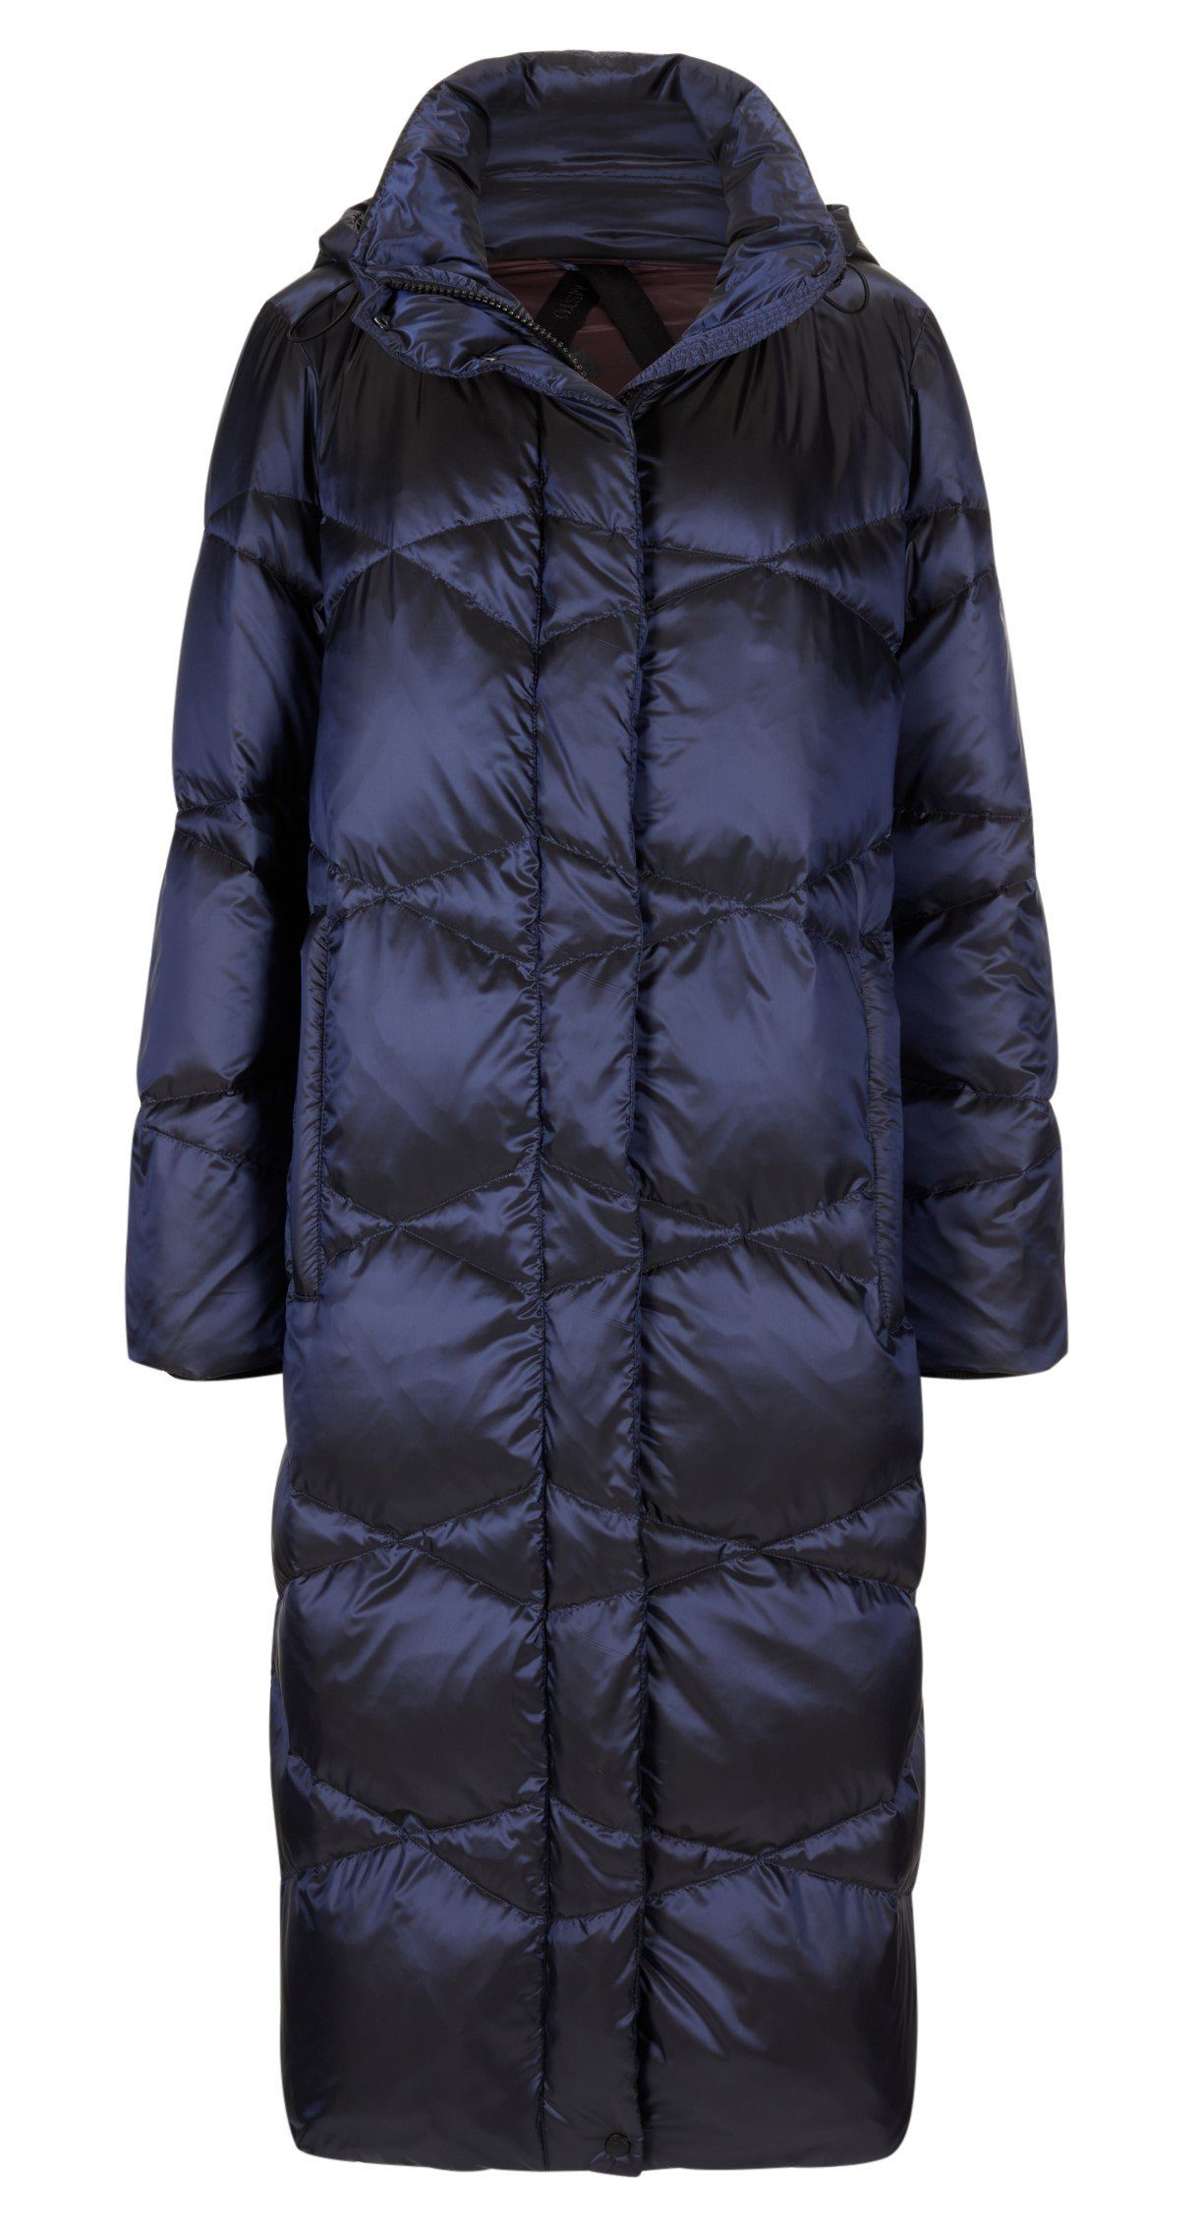 MS-Ola стеганое пальто с теплым пуховым наполнителем и съемным капюшоном.